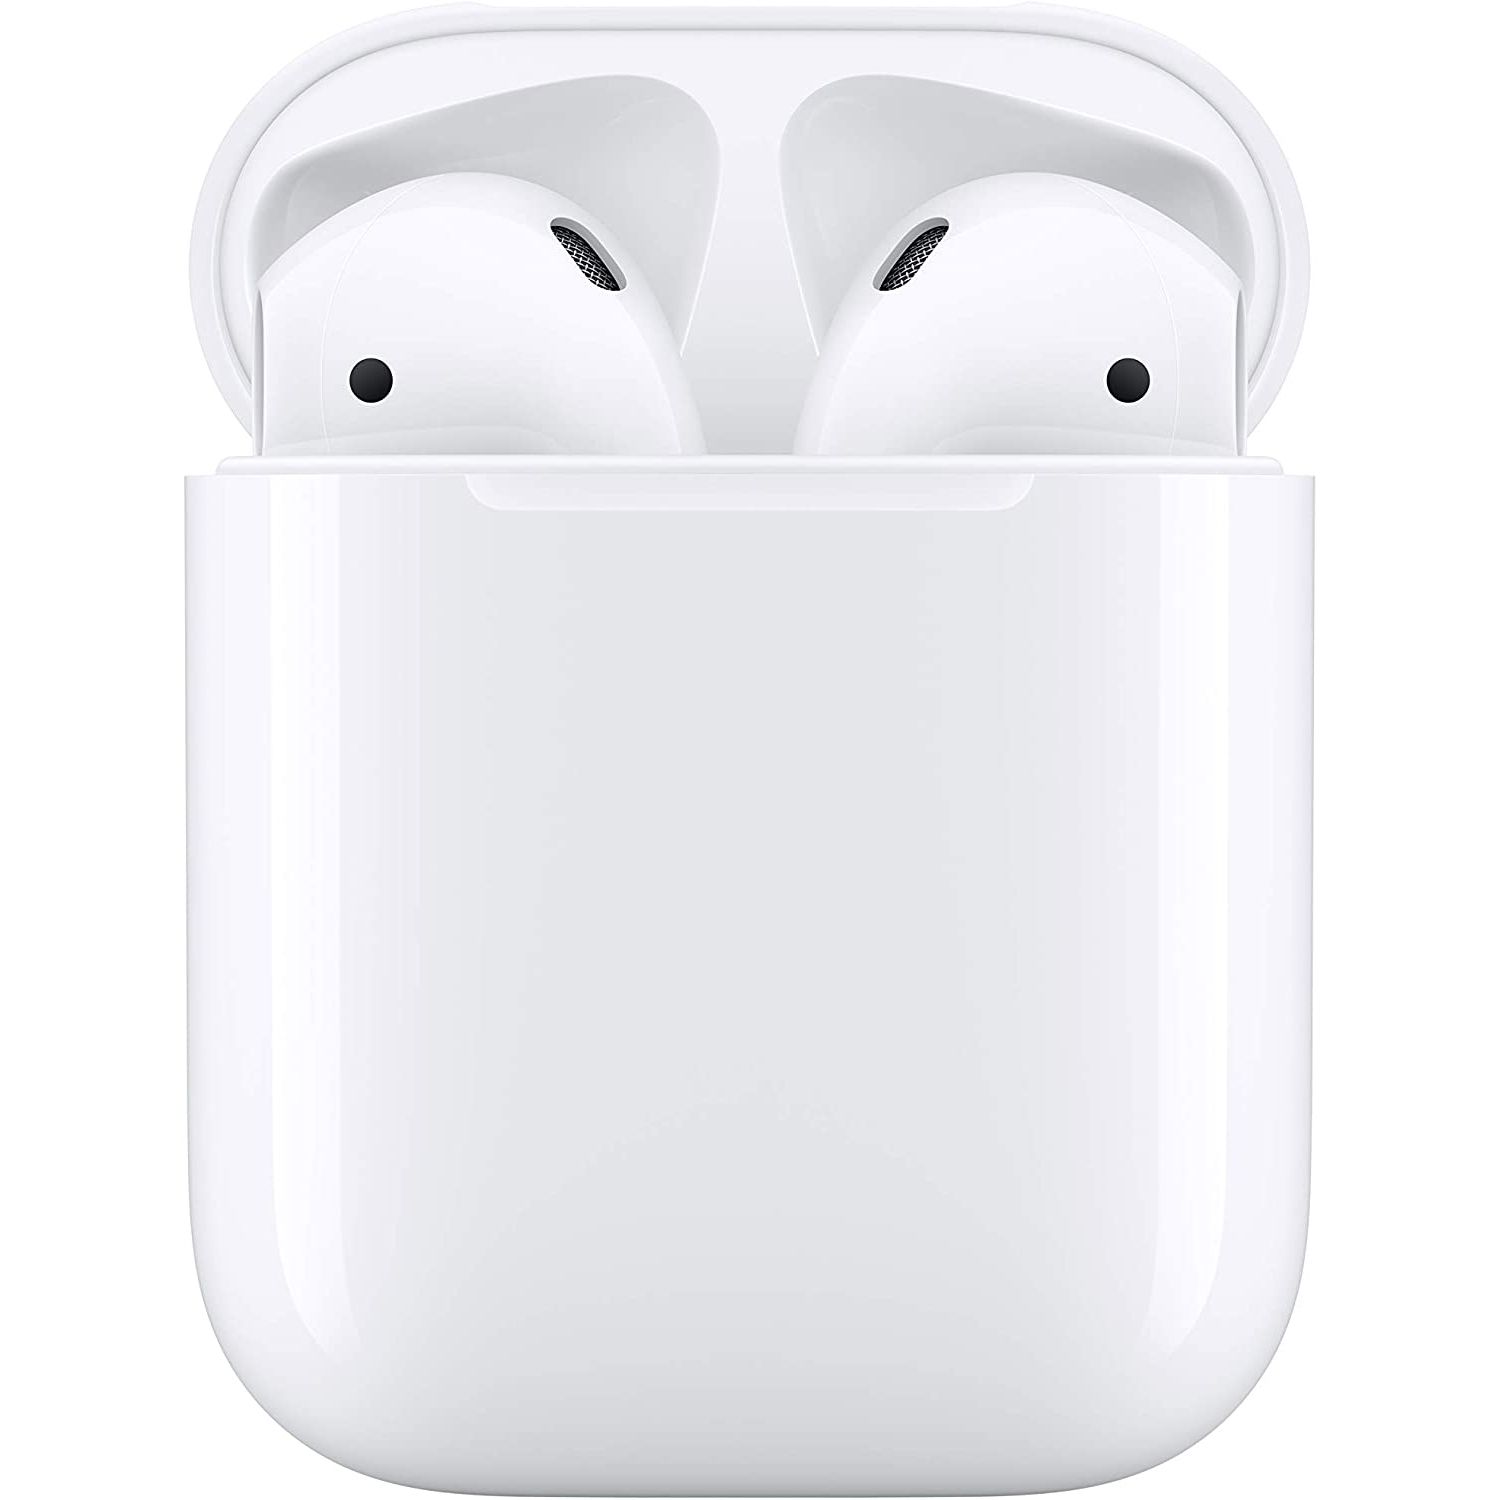 Apple AirPods-ը նշվում է մինչև իրենց ամենացածր գինը Amazon Prime Day-ի համար